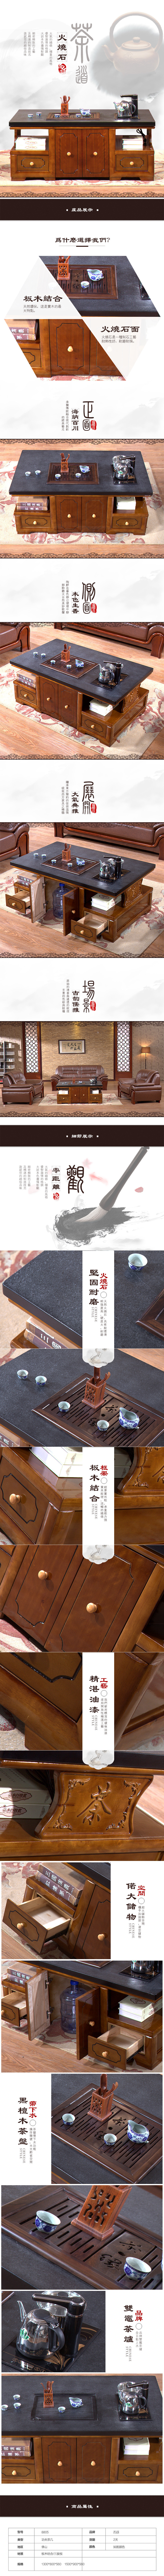 淘宝美工亚丁中国风古风家居茶具详情页设计作品